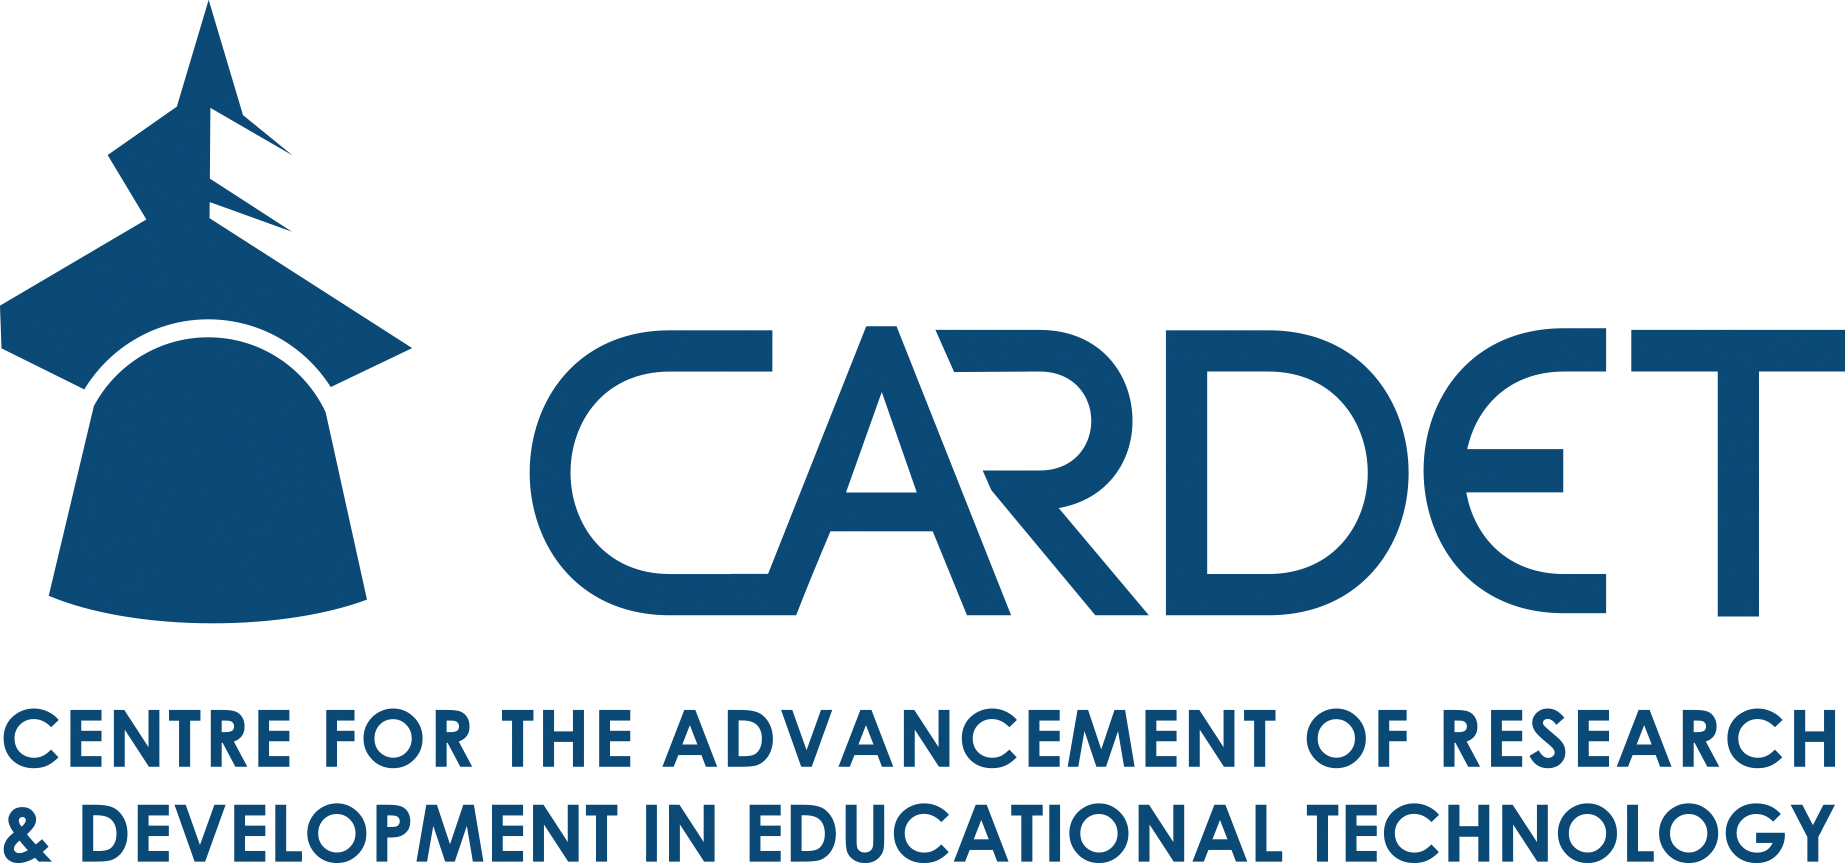 CARDET logo